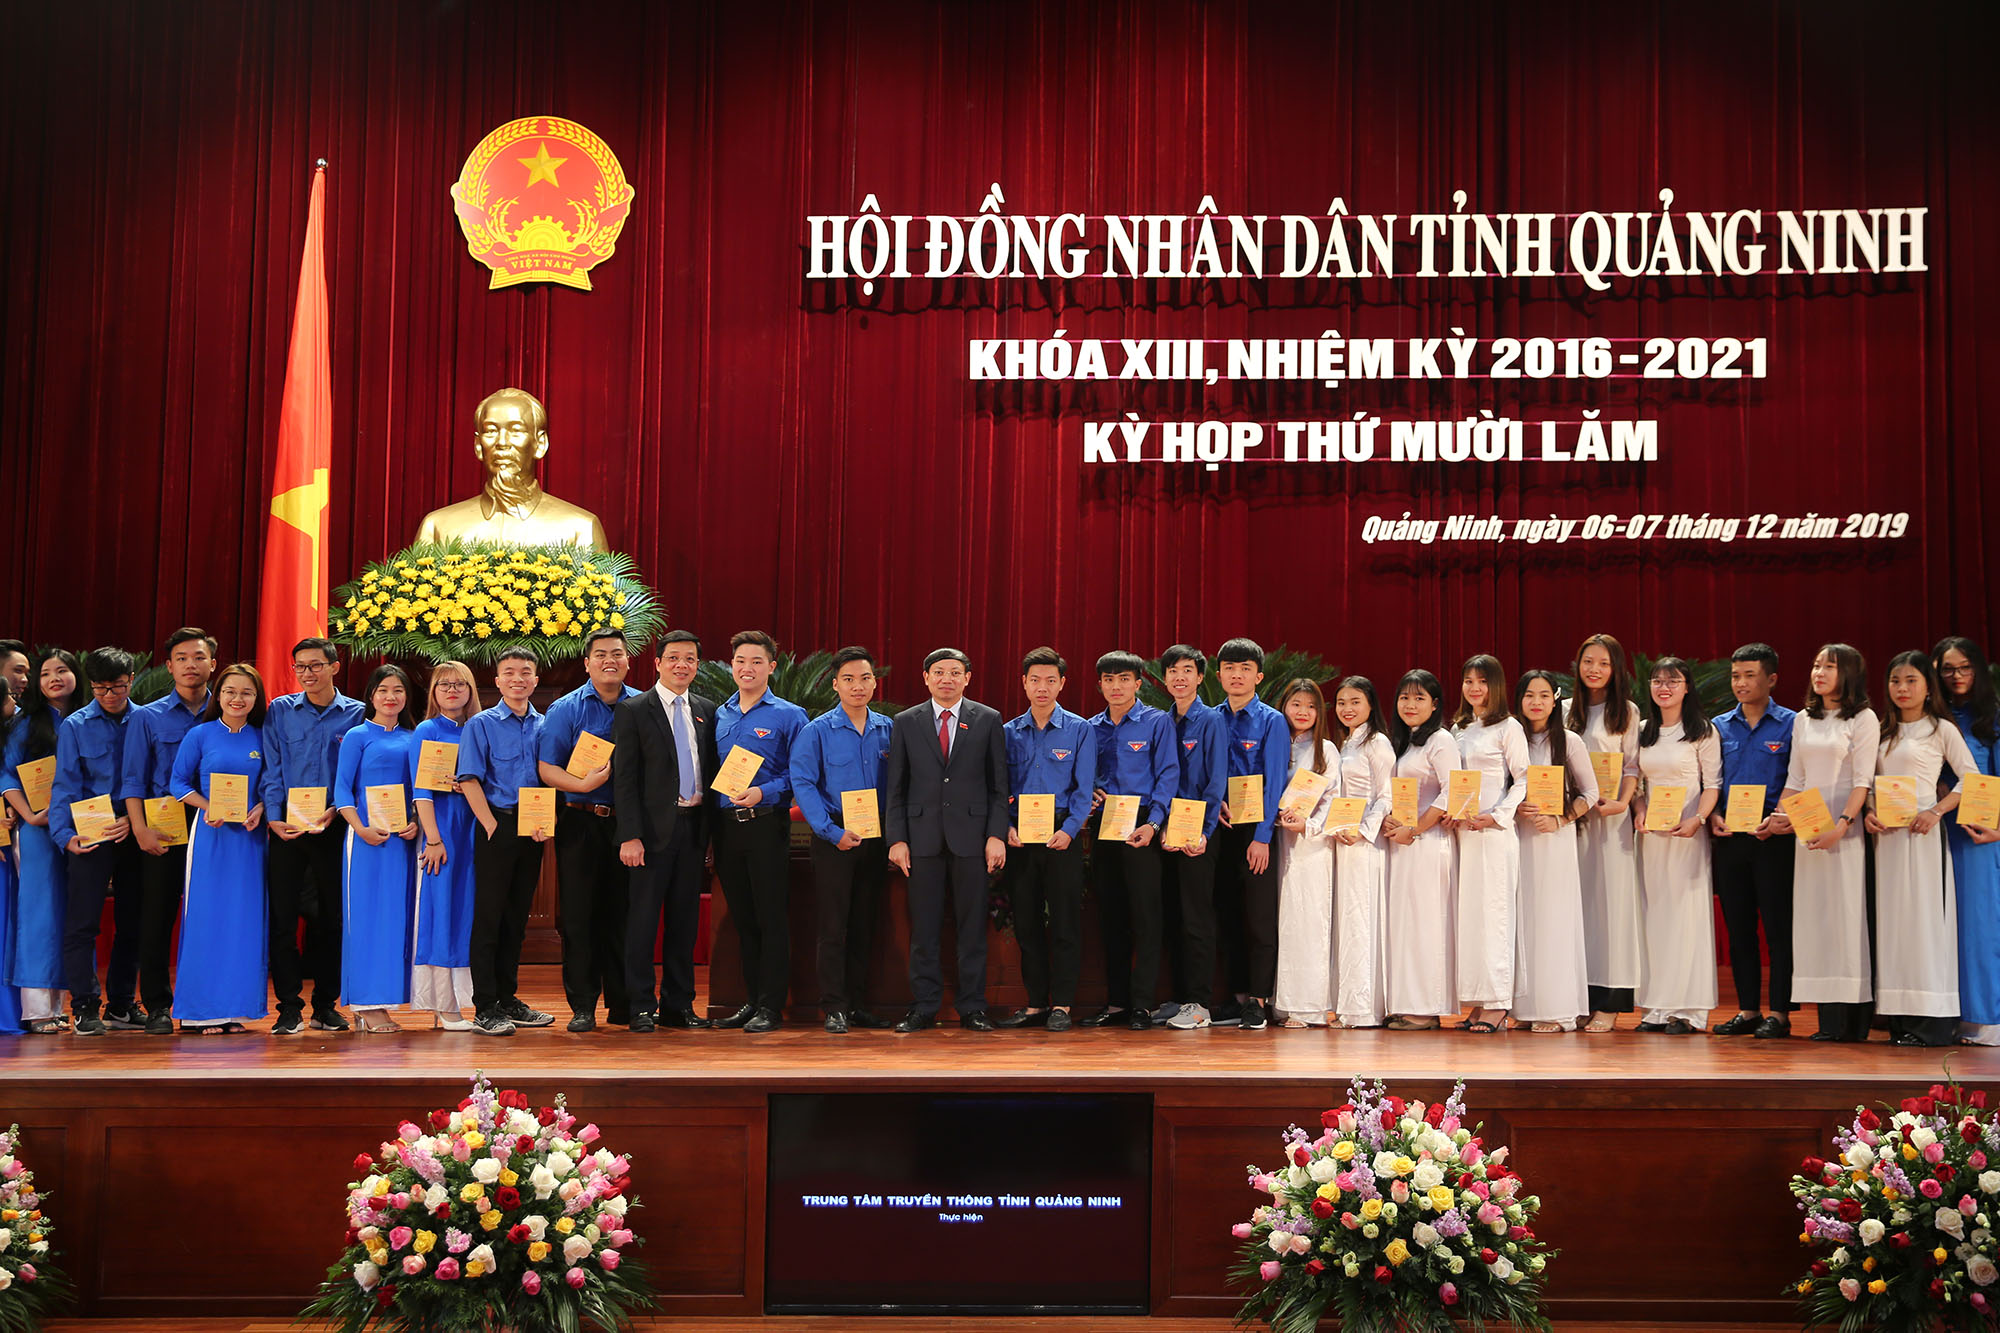 Đồng chí Nguyễn Xuân Ký, Bí thư Tỉnh ủy, Chủ tịch HĐND tỉnh, trao giấy chứng nhận cho 50 sinh viên có thành tích tiêu biểu tham dự kỳ họp.